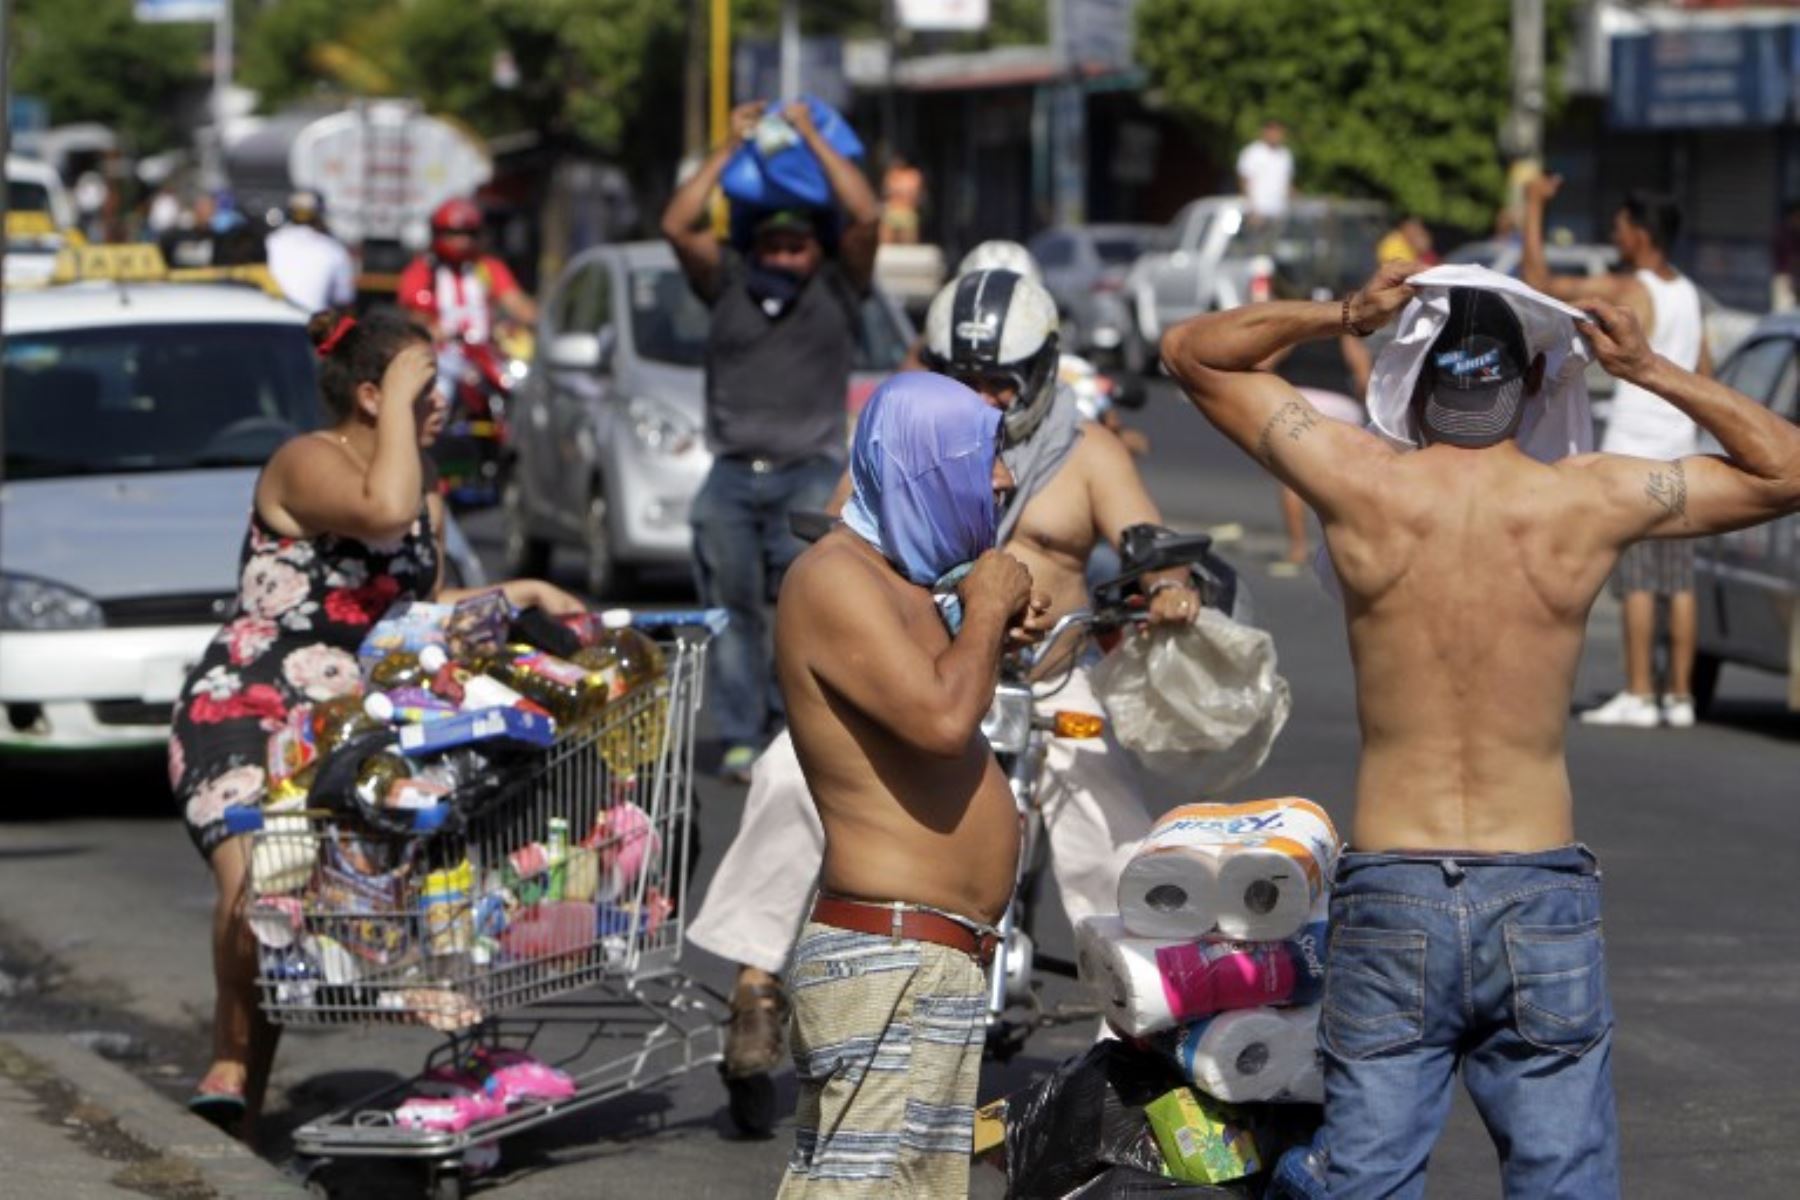 La gente empuja los carros de compras con bienes, después de saquear un supermercado por las protestas en contra de las reformas del gobierno en Nicaragua.Foto:AFP